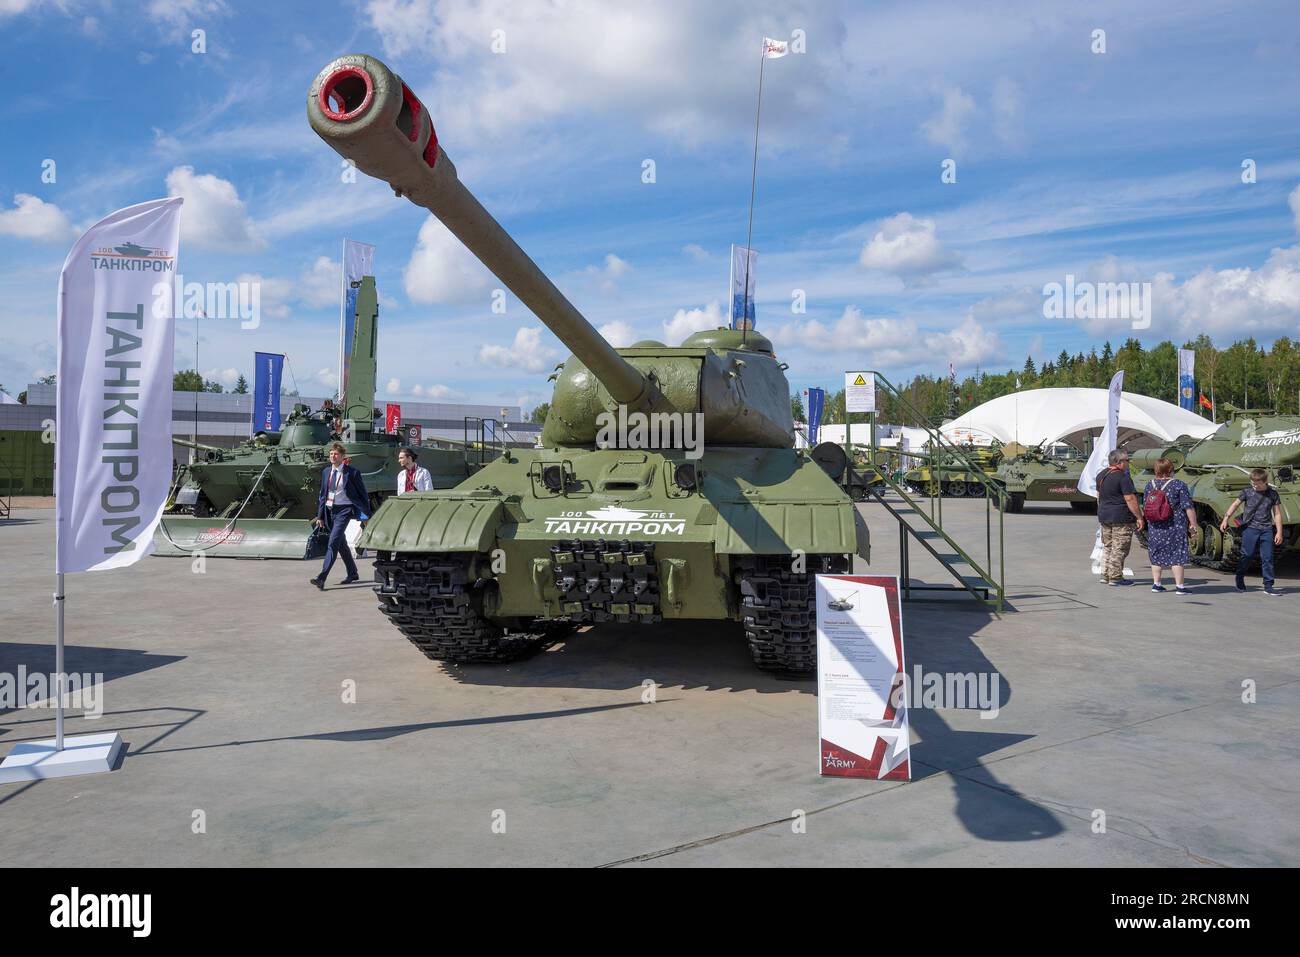 RÉGION DE MOSCOU, RUSSIE - 25 AOÛT 2020 : IS-2 - le char lourd soviétique le plus puissant de la période de la Seconde Guerre mondiale Exposition du p militaire-patriotique Banque D'Images